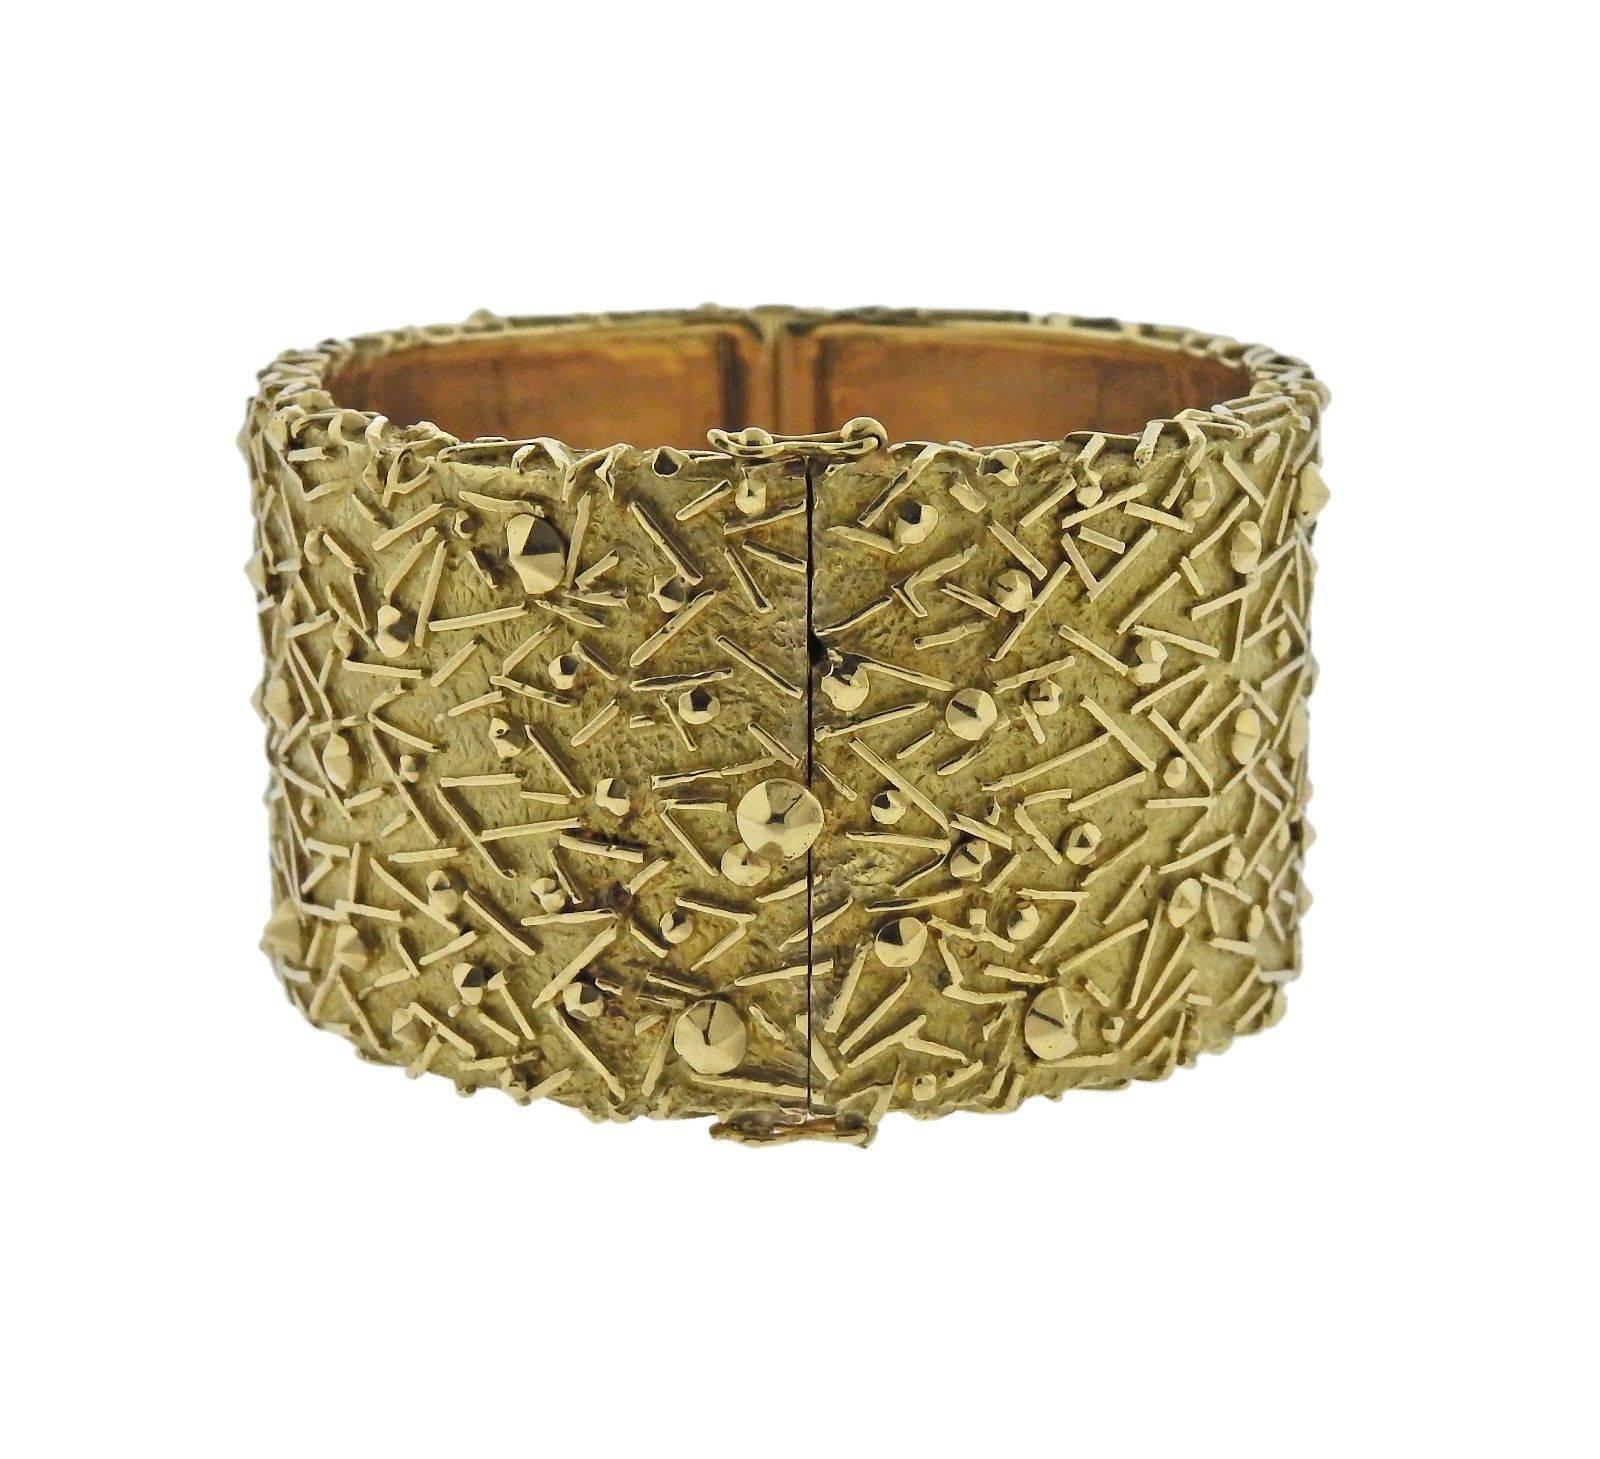 An 18k gold bracelet by Tiffany & Co.  The bracelet will fit approximately a 7